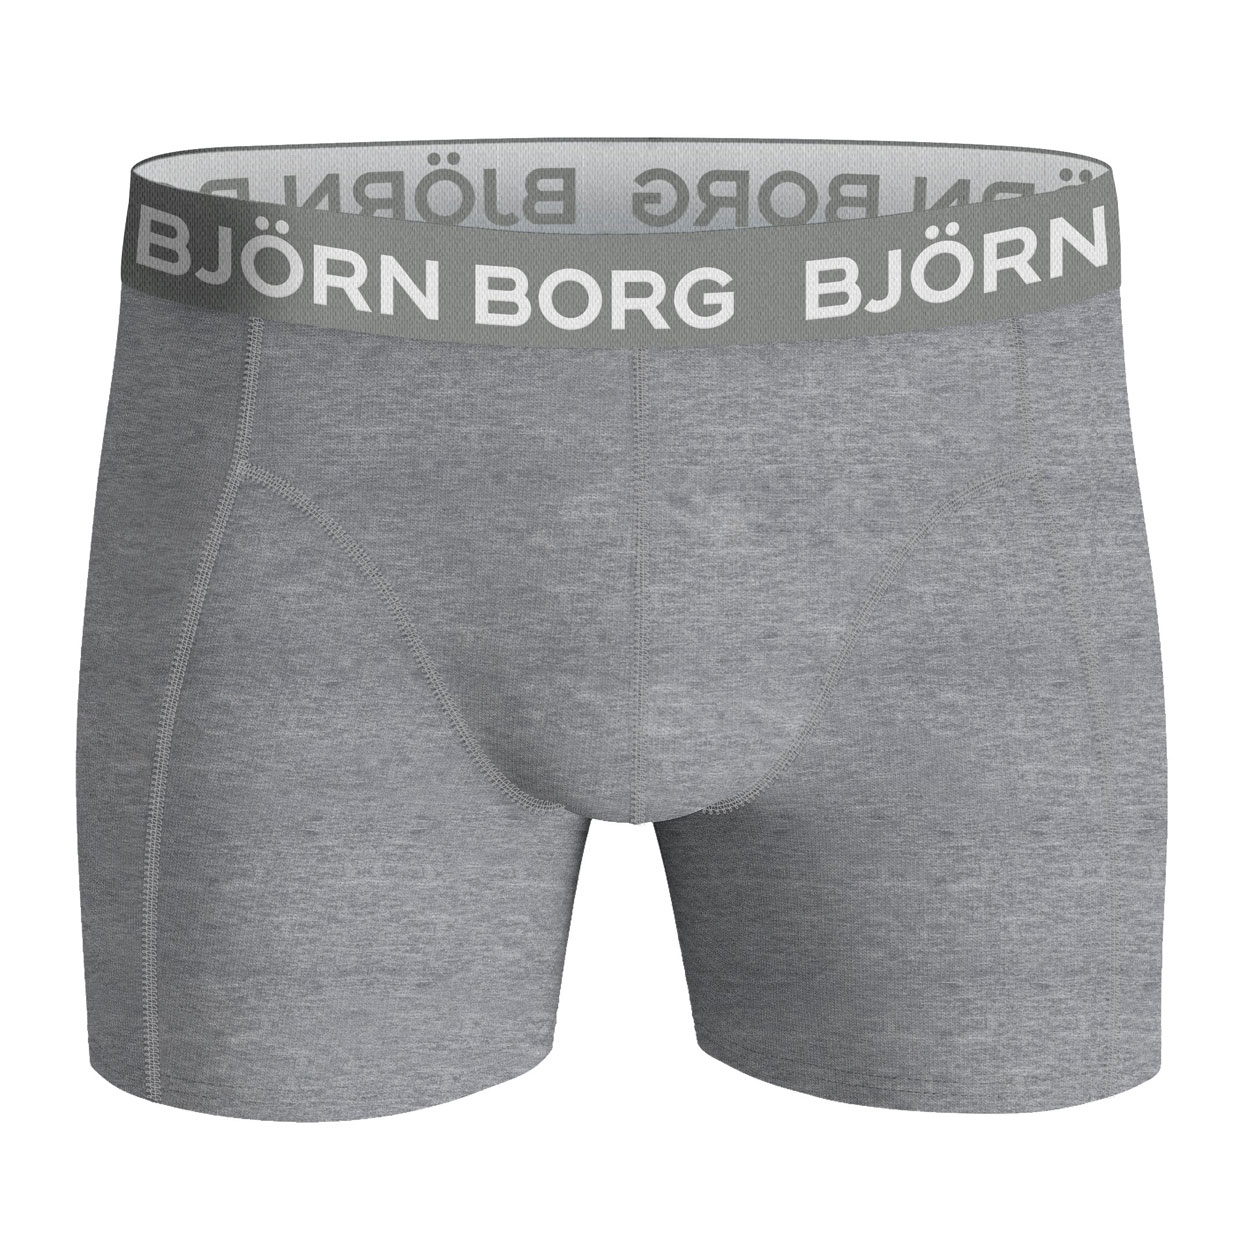 Bjorn-Borg-10002104-mp002-boys